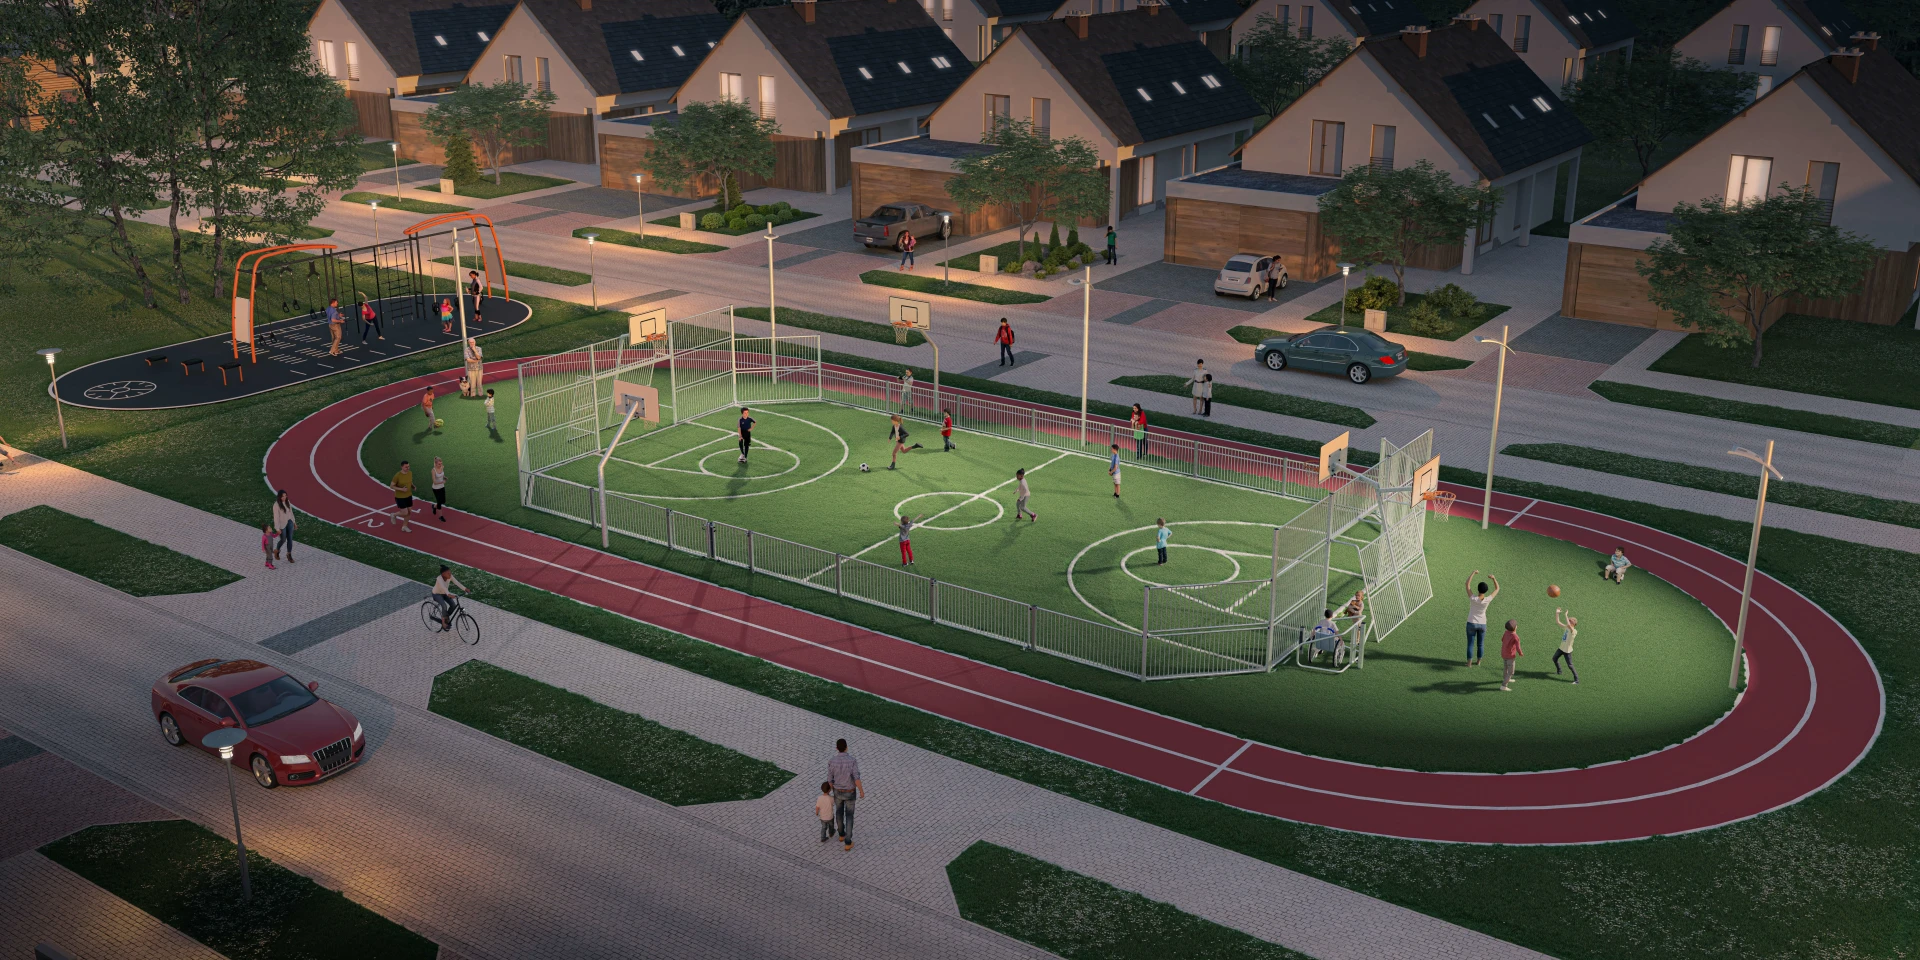 Idée de conception d'un terrain multisports pour les populations en banlieues